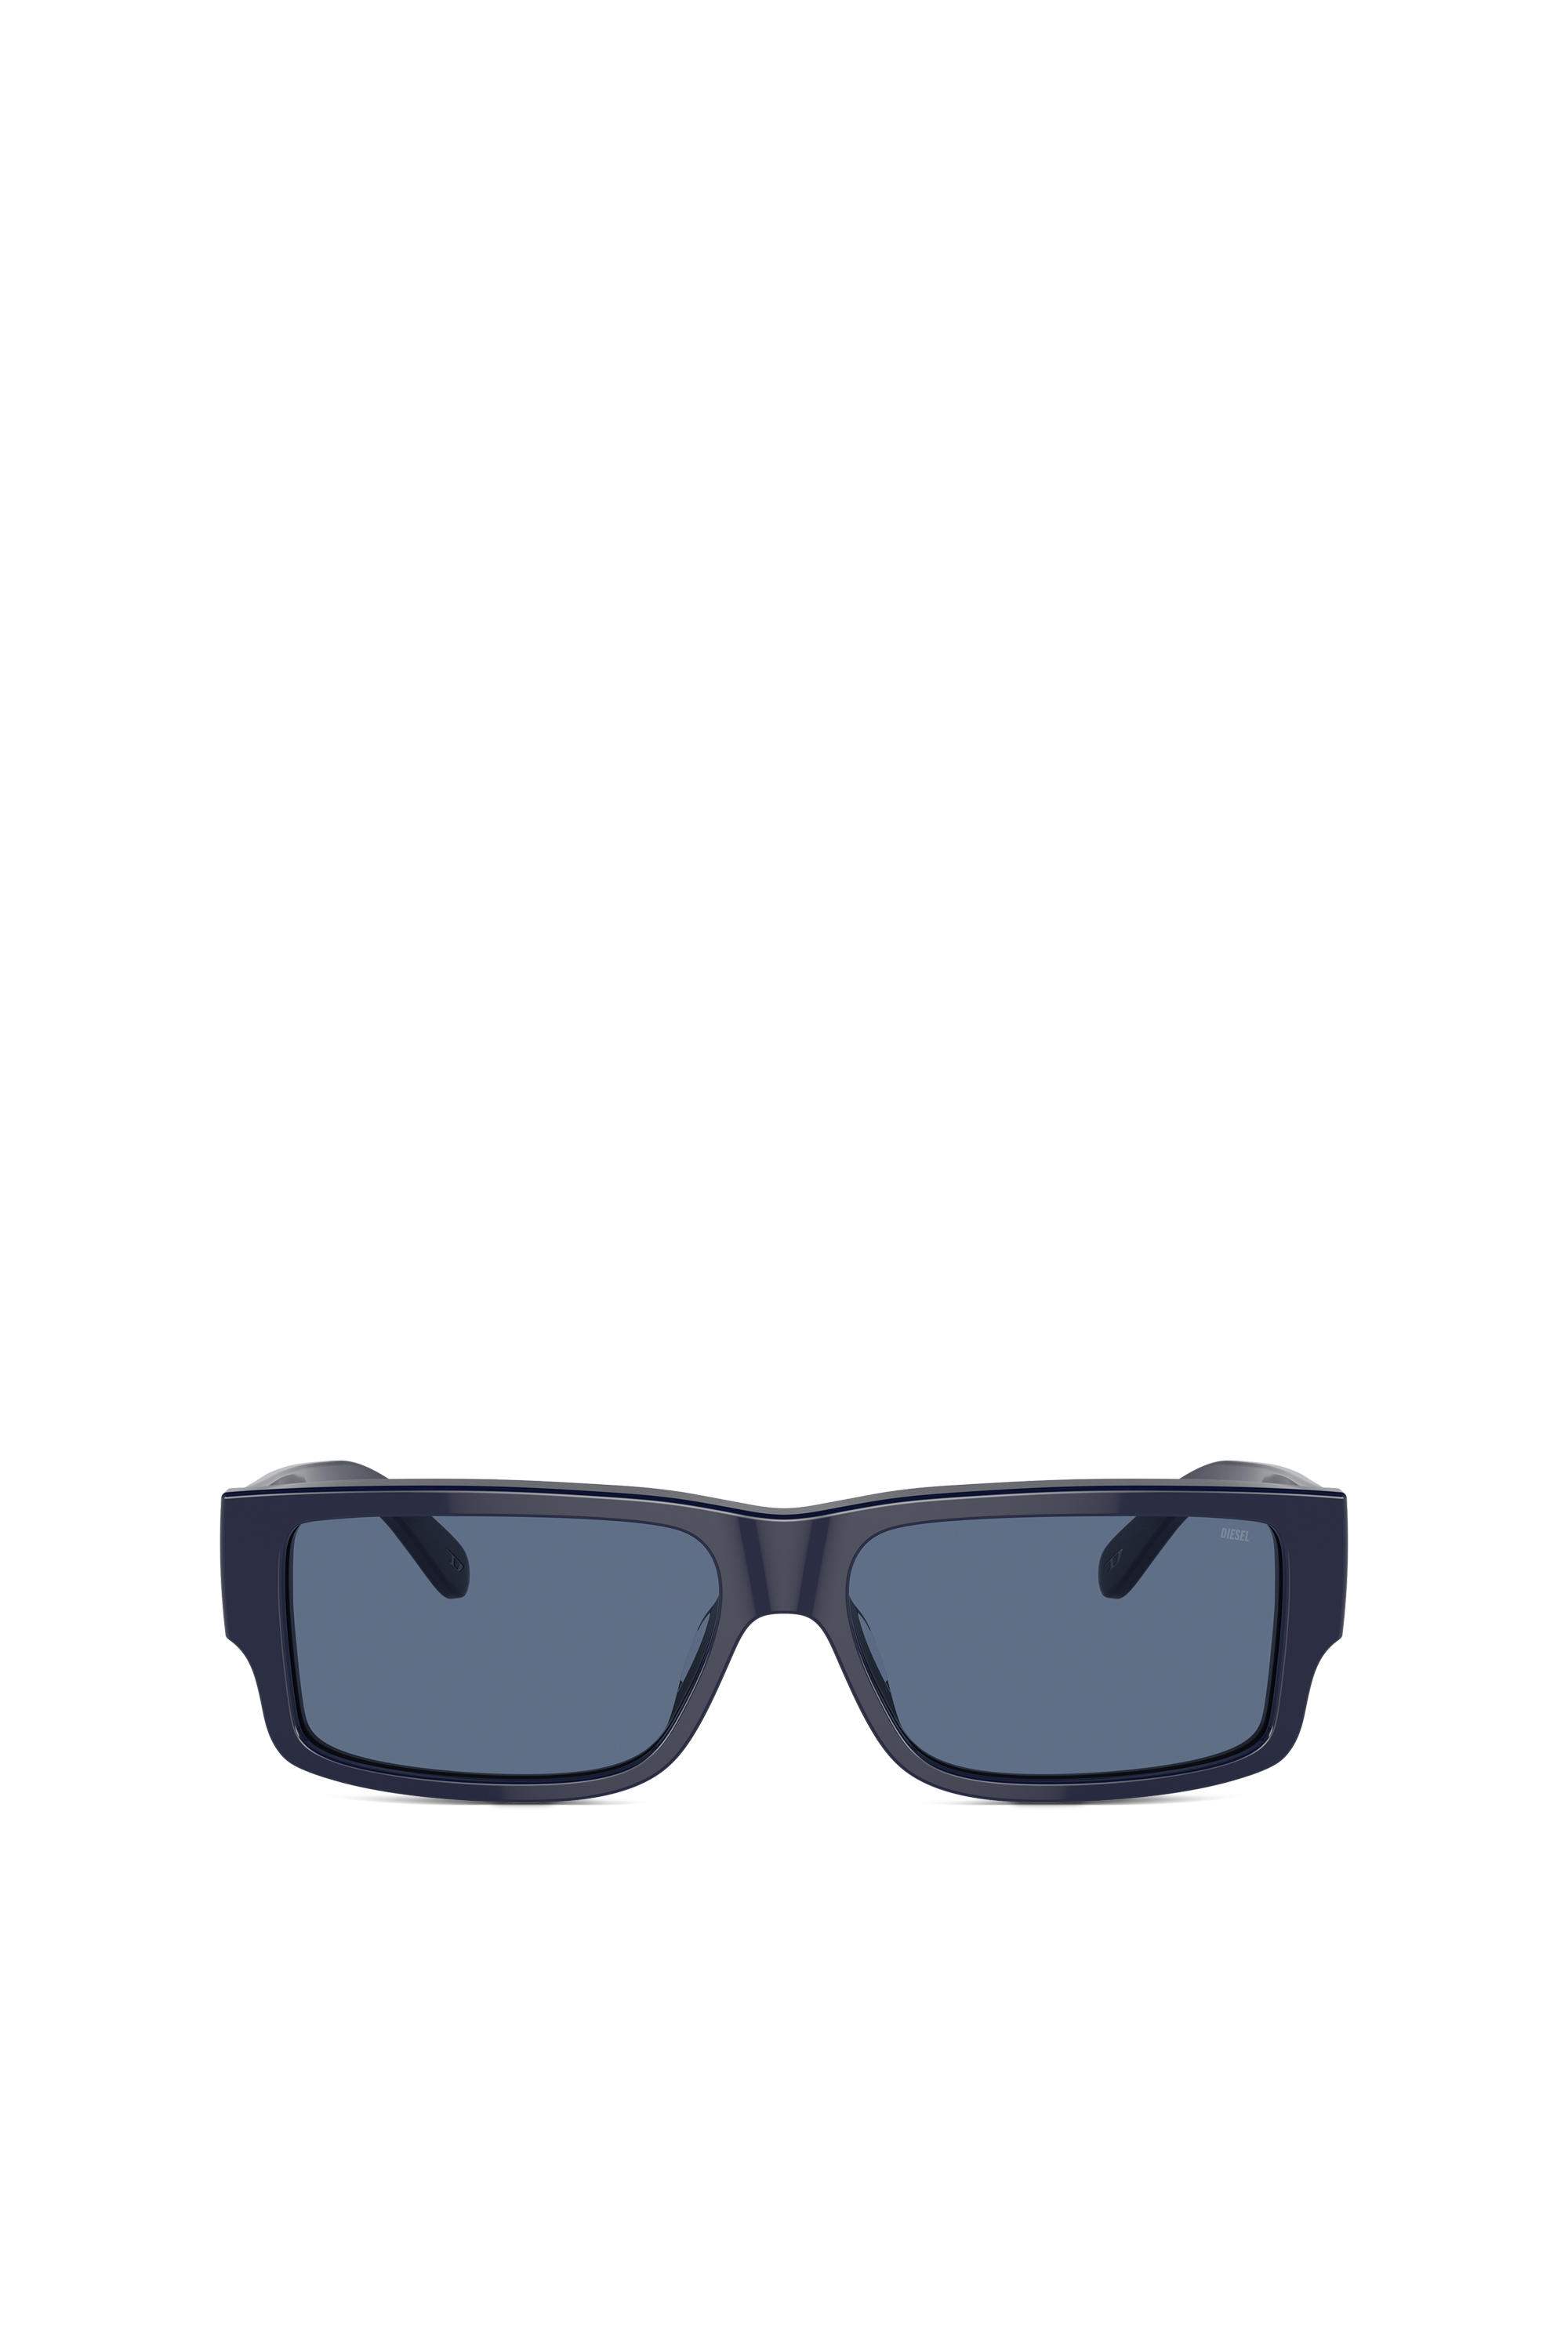 Diesel - Rechteckiges Modell Brille - Sonnenbrille - Herren - Blau